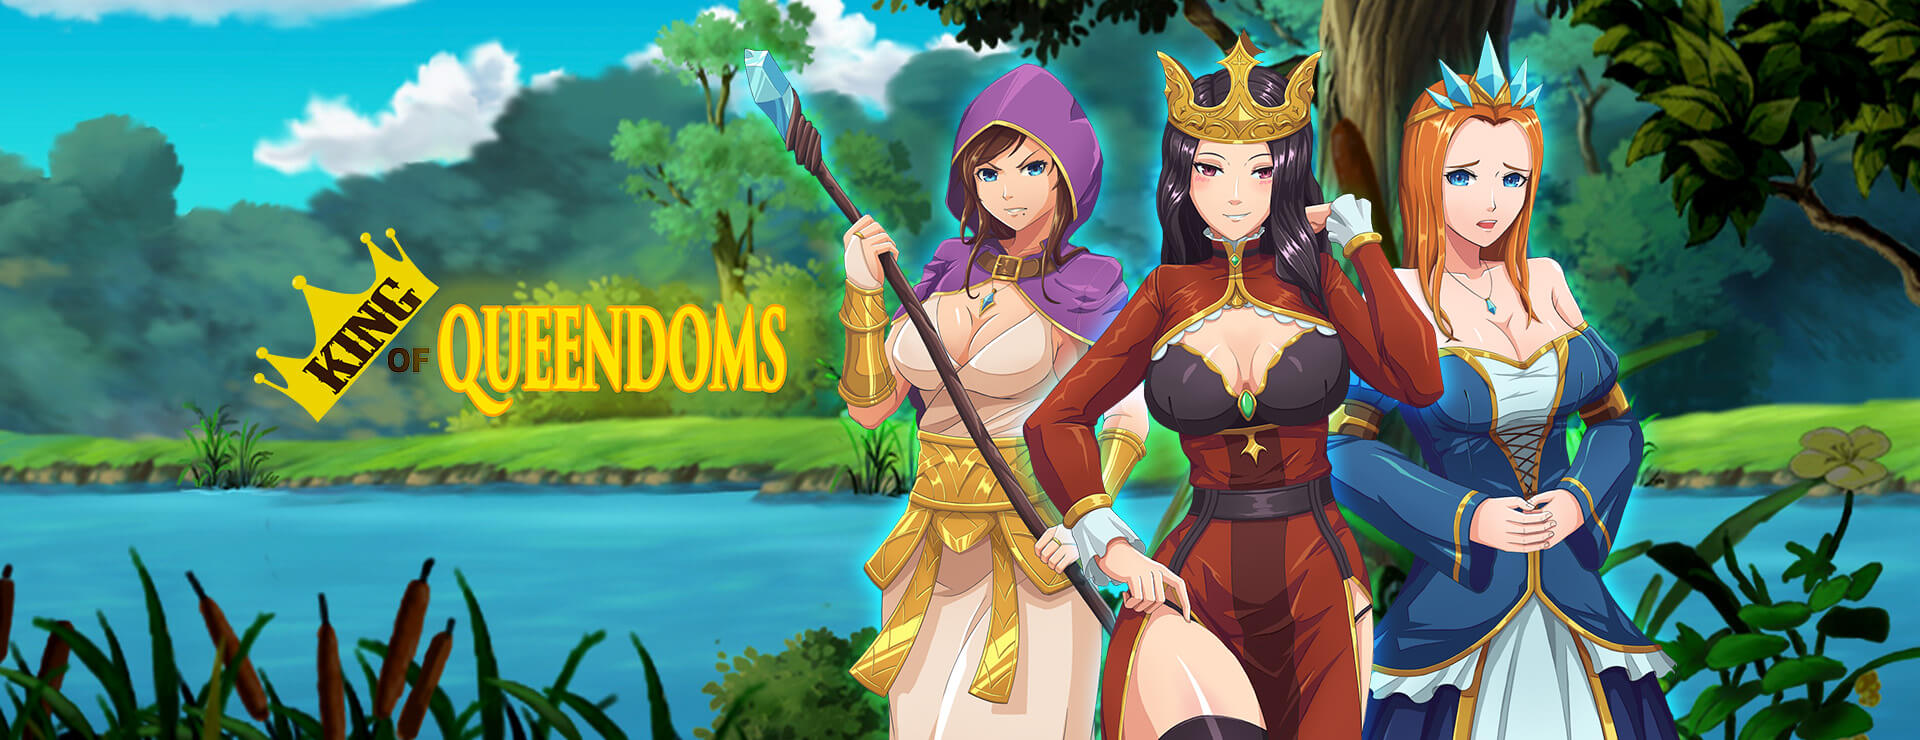 King of Queendoms - ビジュアルノベル ゲーム